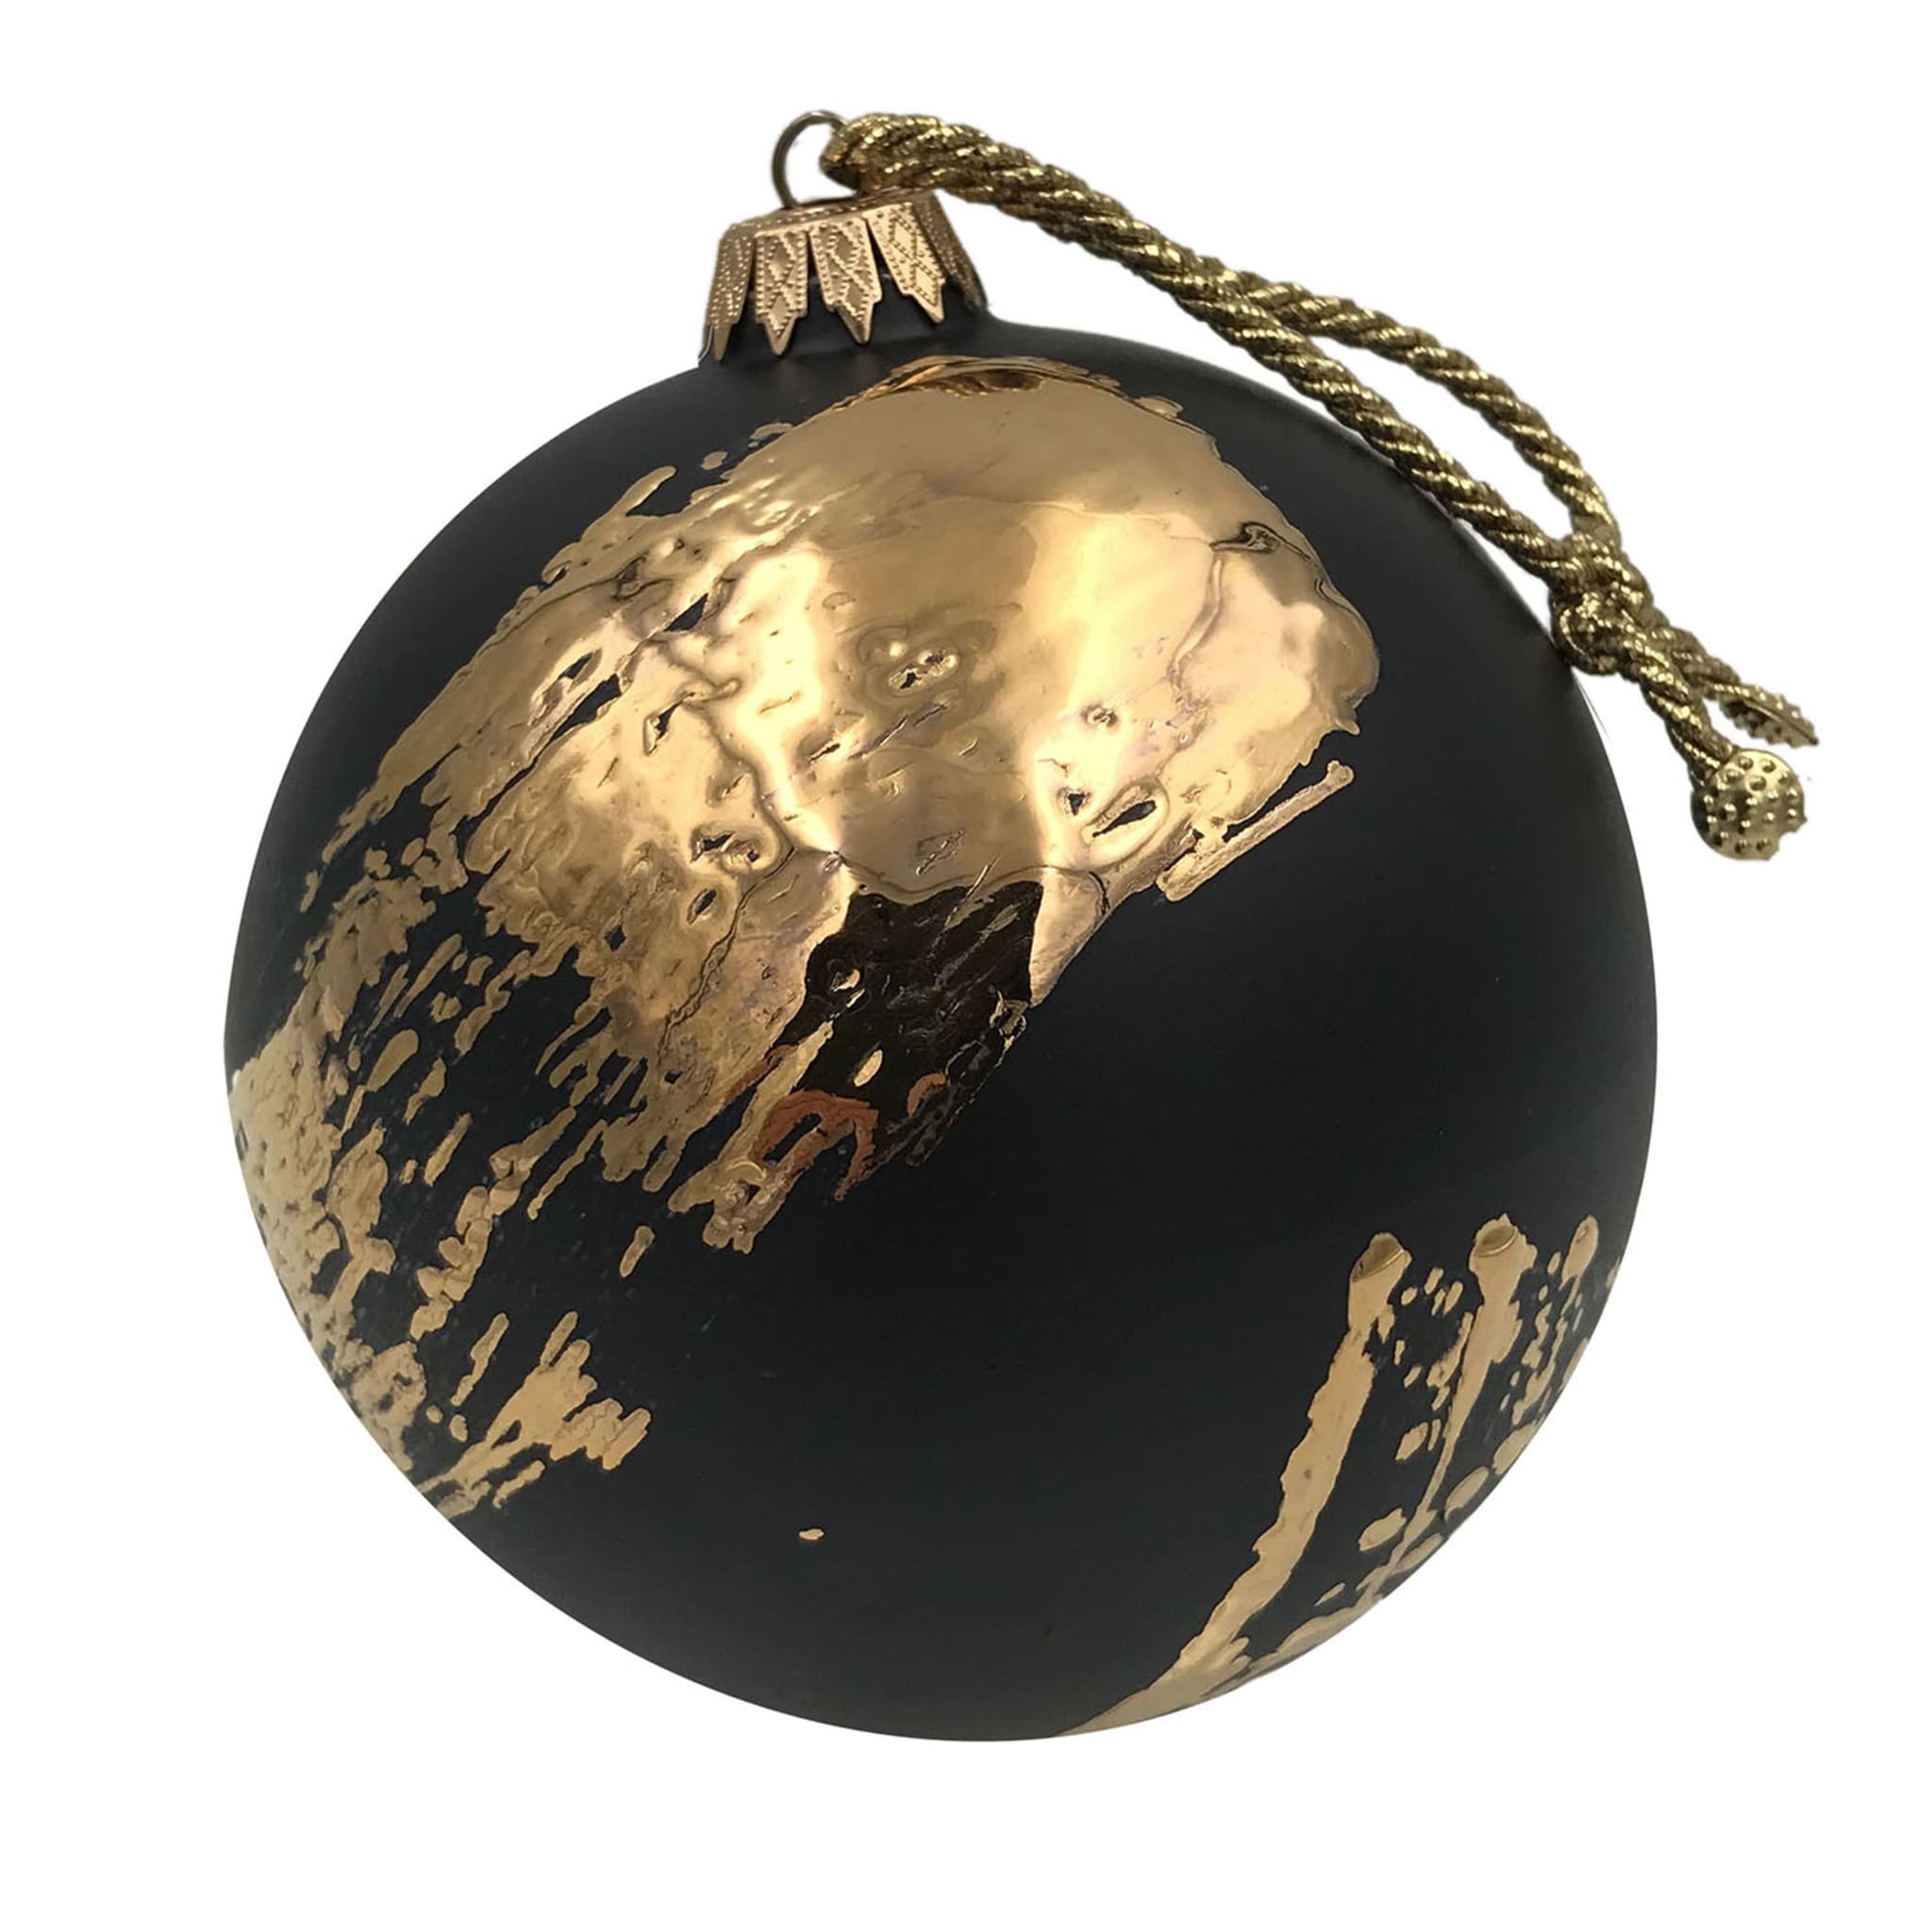 Penellata Adorno navideño de cerámica negro y dorado - Vista principal